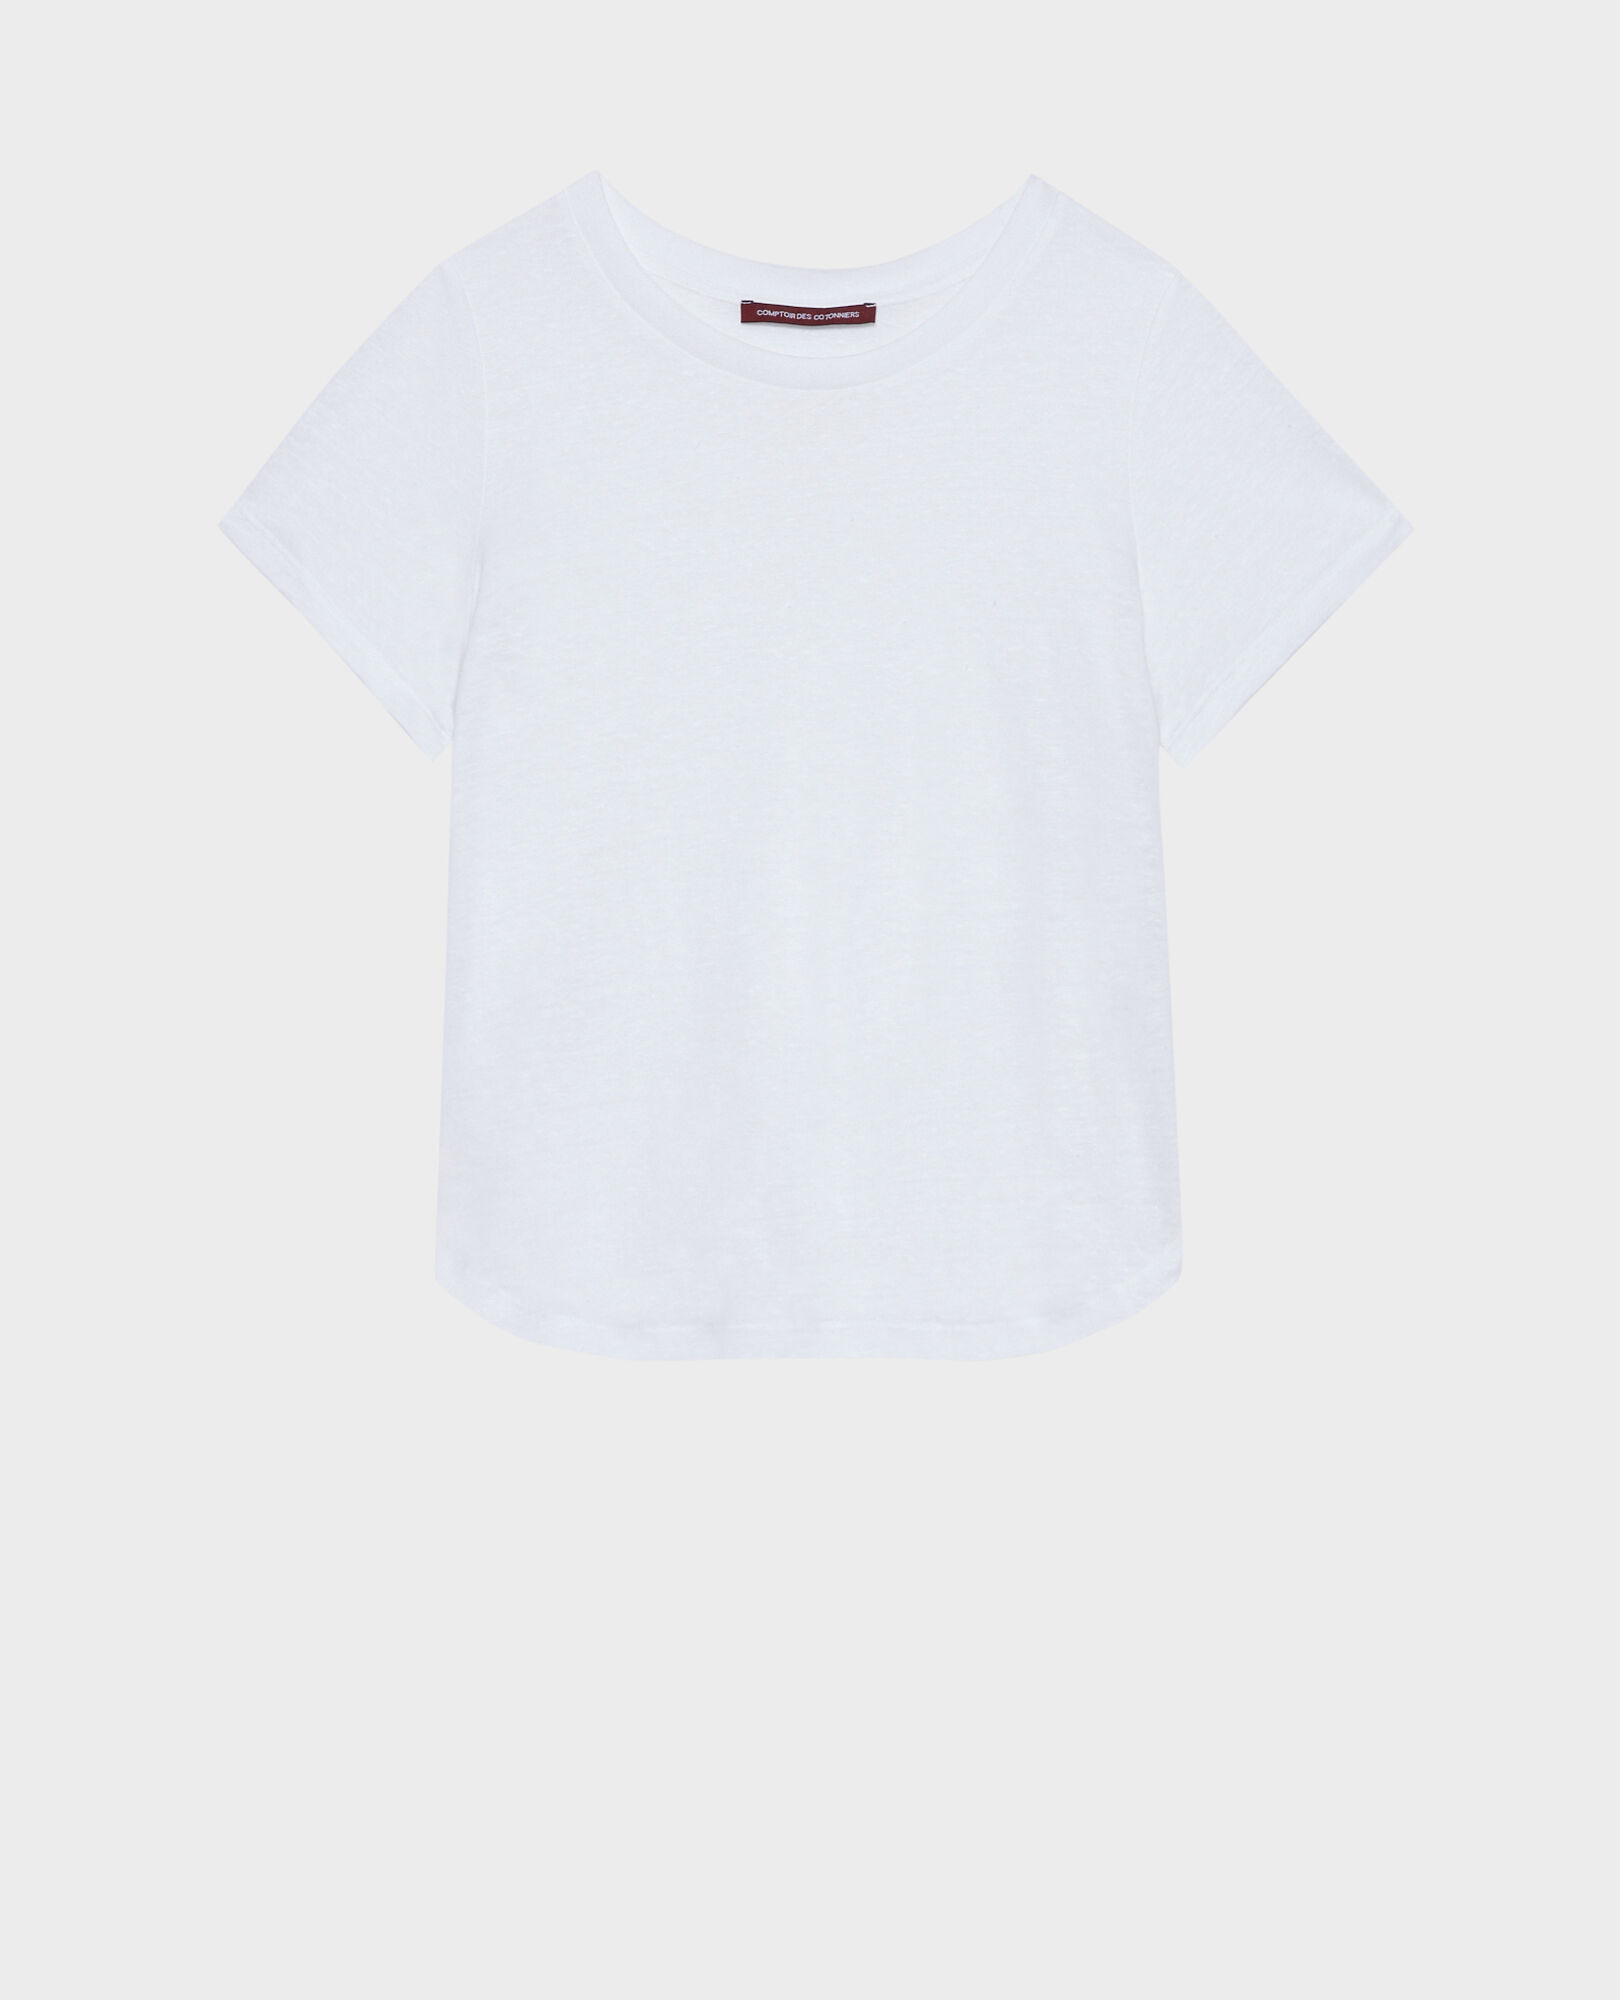 AMANDINE - Camiseta con cuello redondo de lino 00 white 2ste055f05